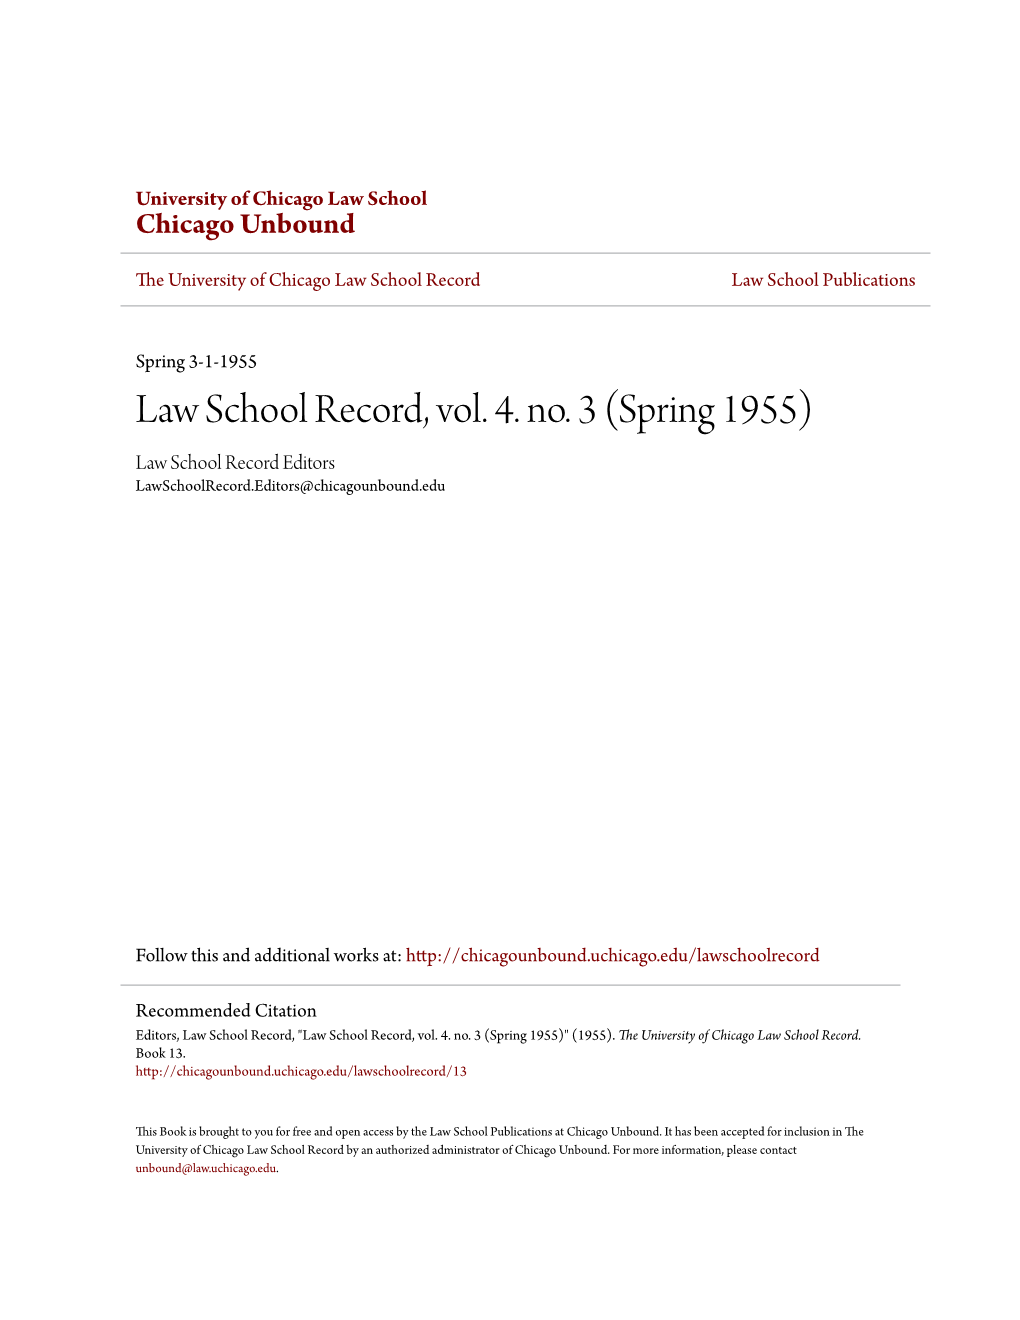 Law School Record, Vol. 4. No. 3 (Spring 1955) Law School Record Editors Lawschoolrecord.Editors@Chicagounbound.Edu